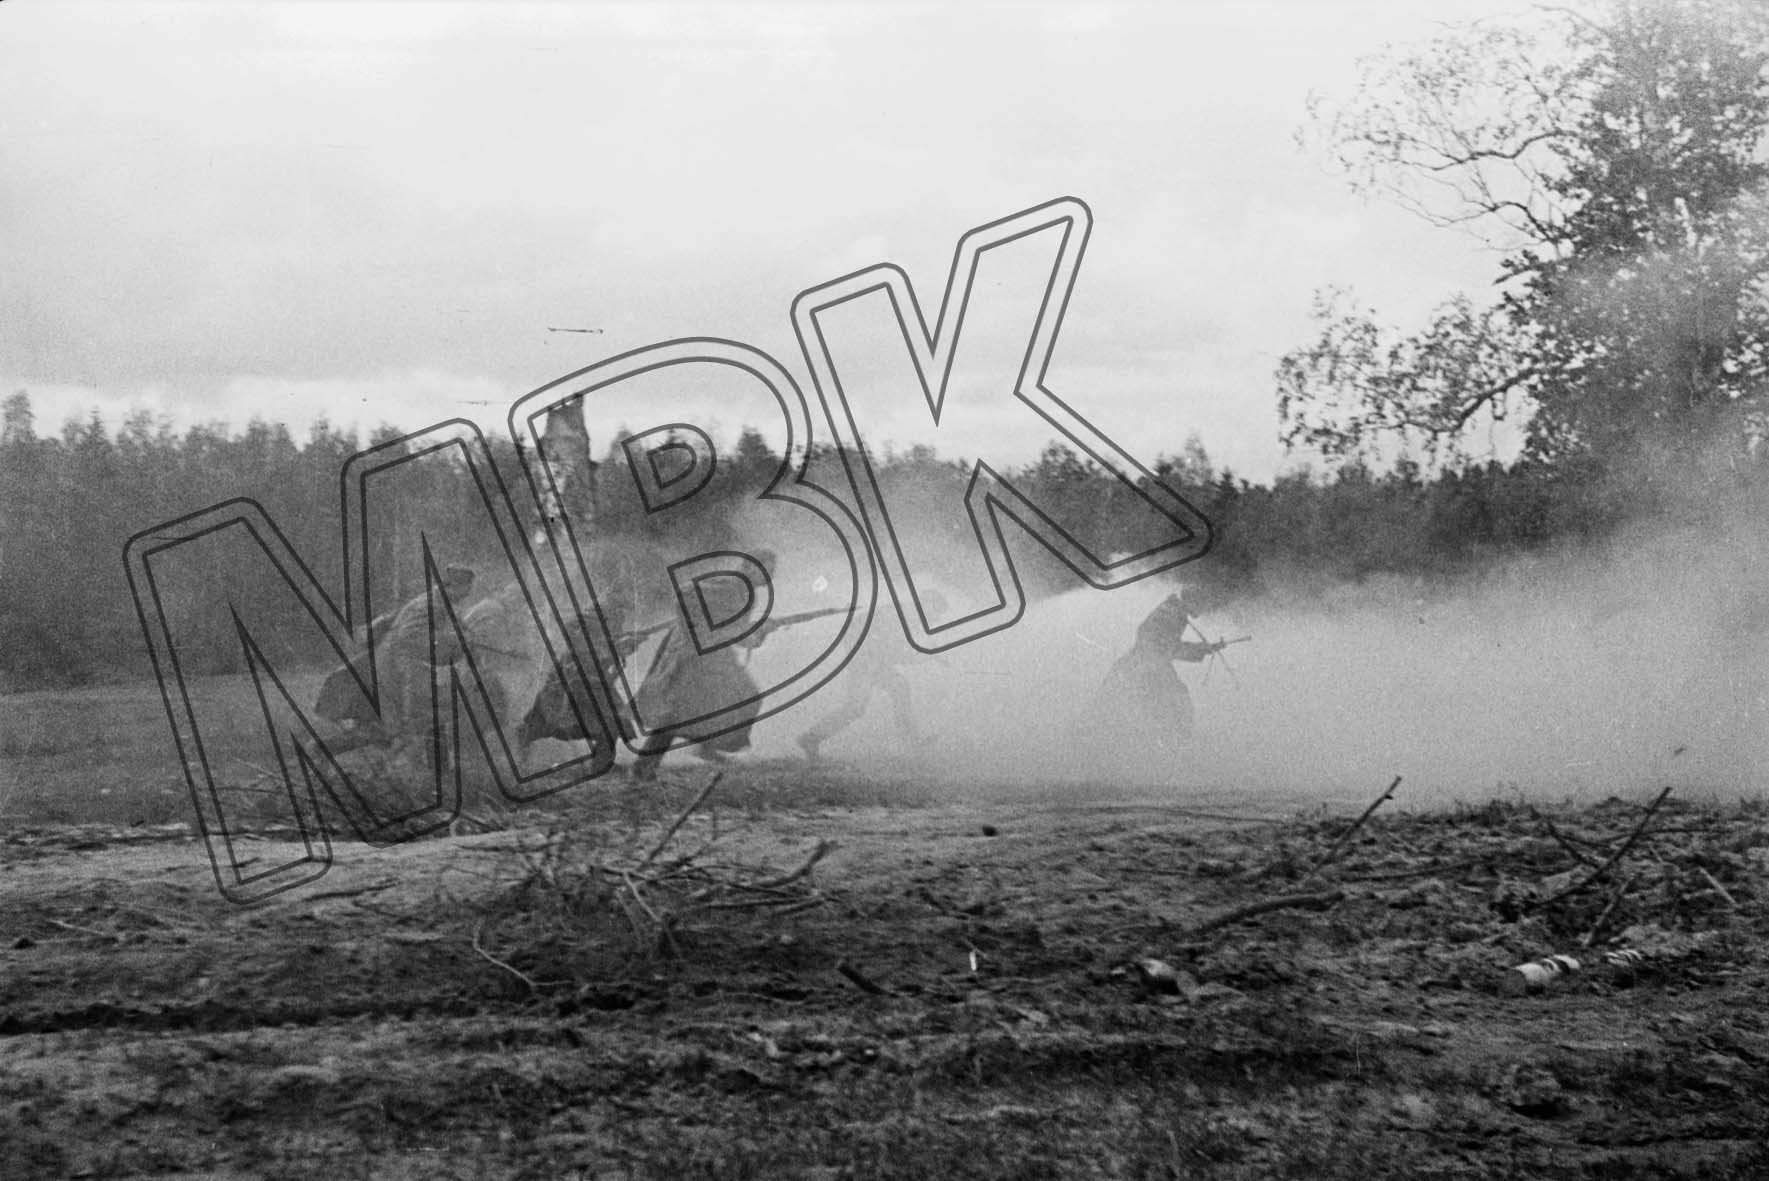 Fotografie: Kämpfe auf den Zufahrtsstraßen von Smolensk, September 1943 (Museum Berlin-Karlshorst RR-P)